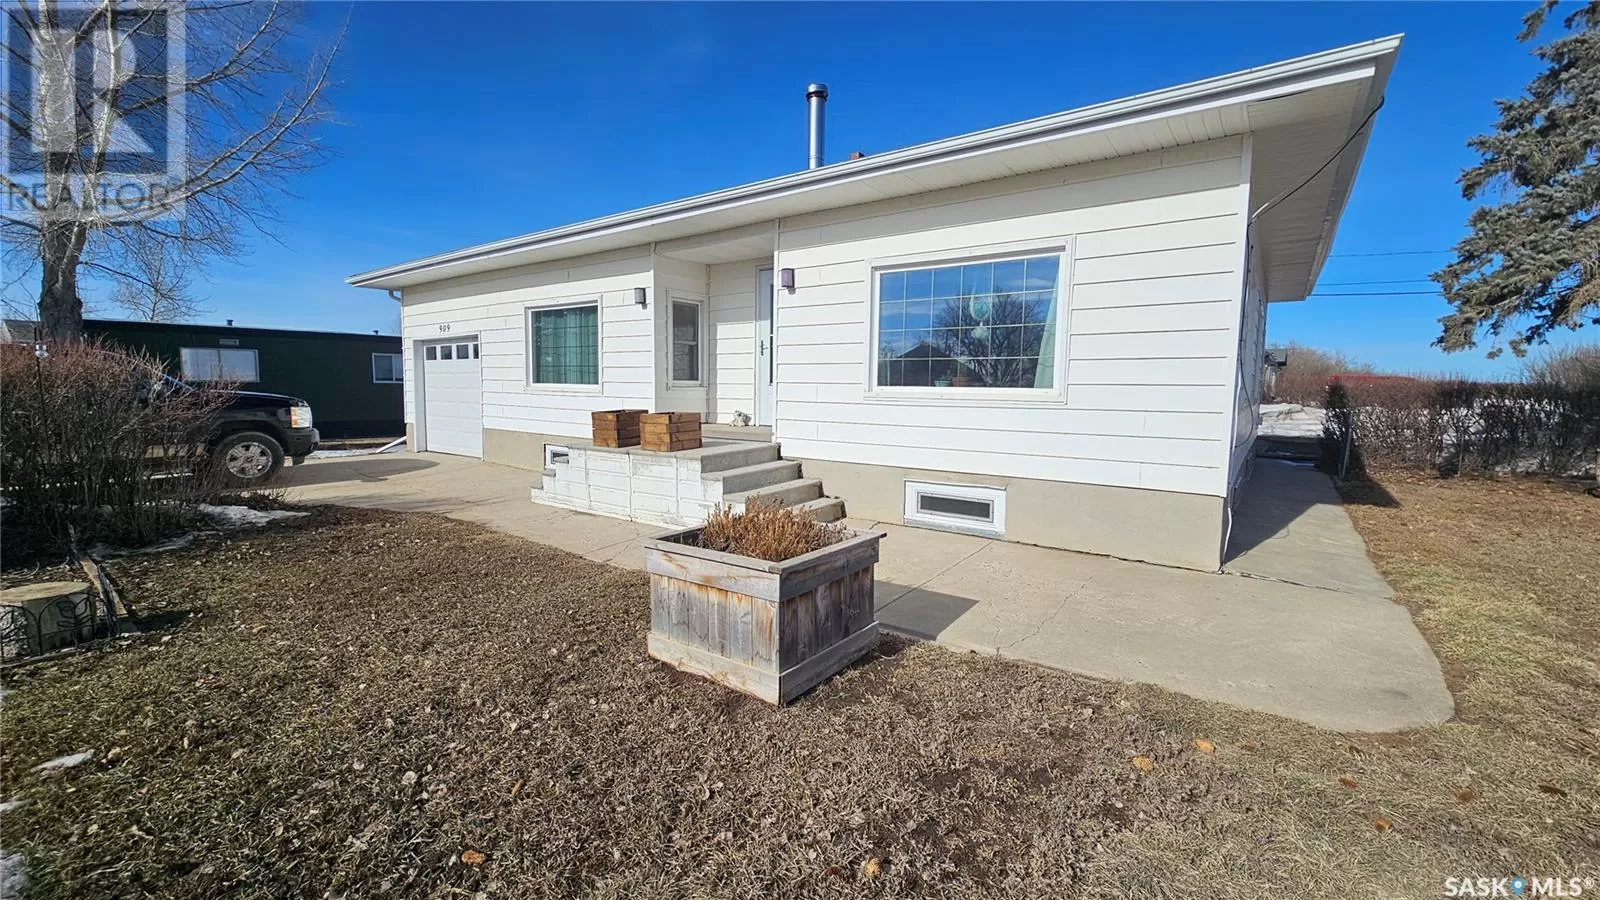 House for rent: 909 1st Street, Hanley, Saskatchewan S0G 2E0